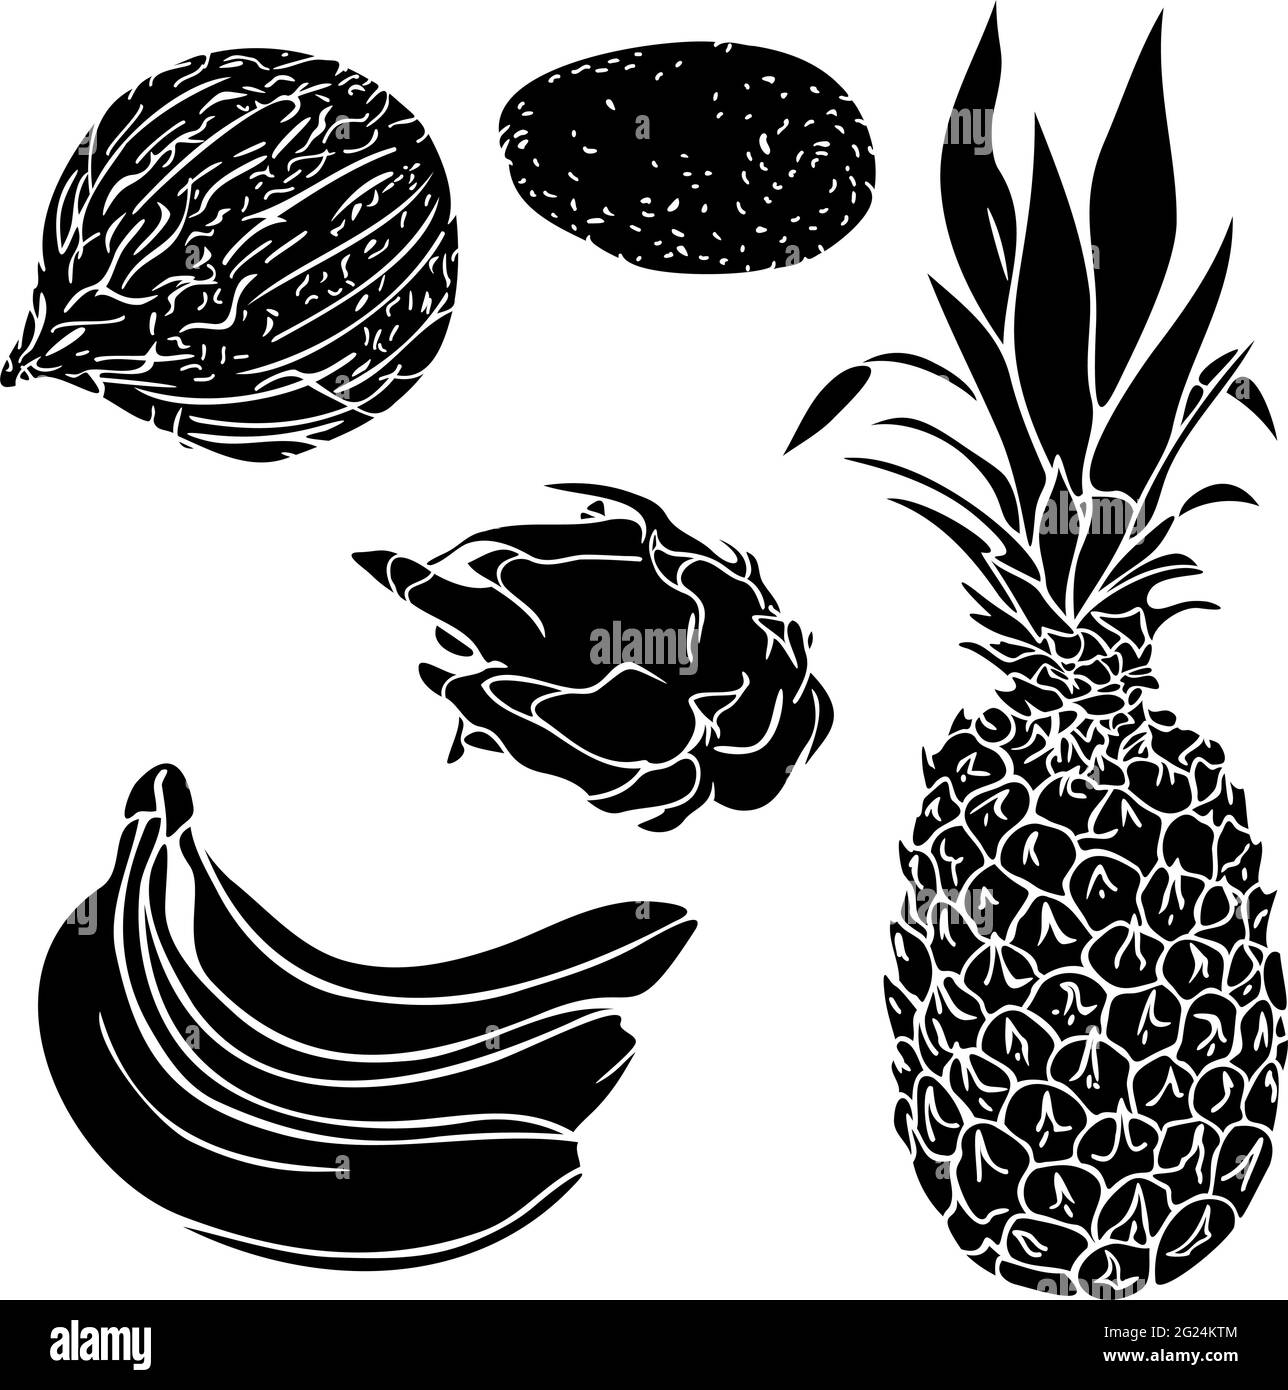 Vektor-Illustration mit Sammlung von Silhouetten von exotischen Früchten. Set aus Kokosnuss, Banane, Ananas, Avocado, Pitaya-Silhouetten. Stock Vektor